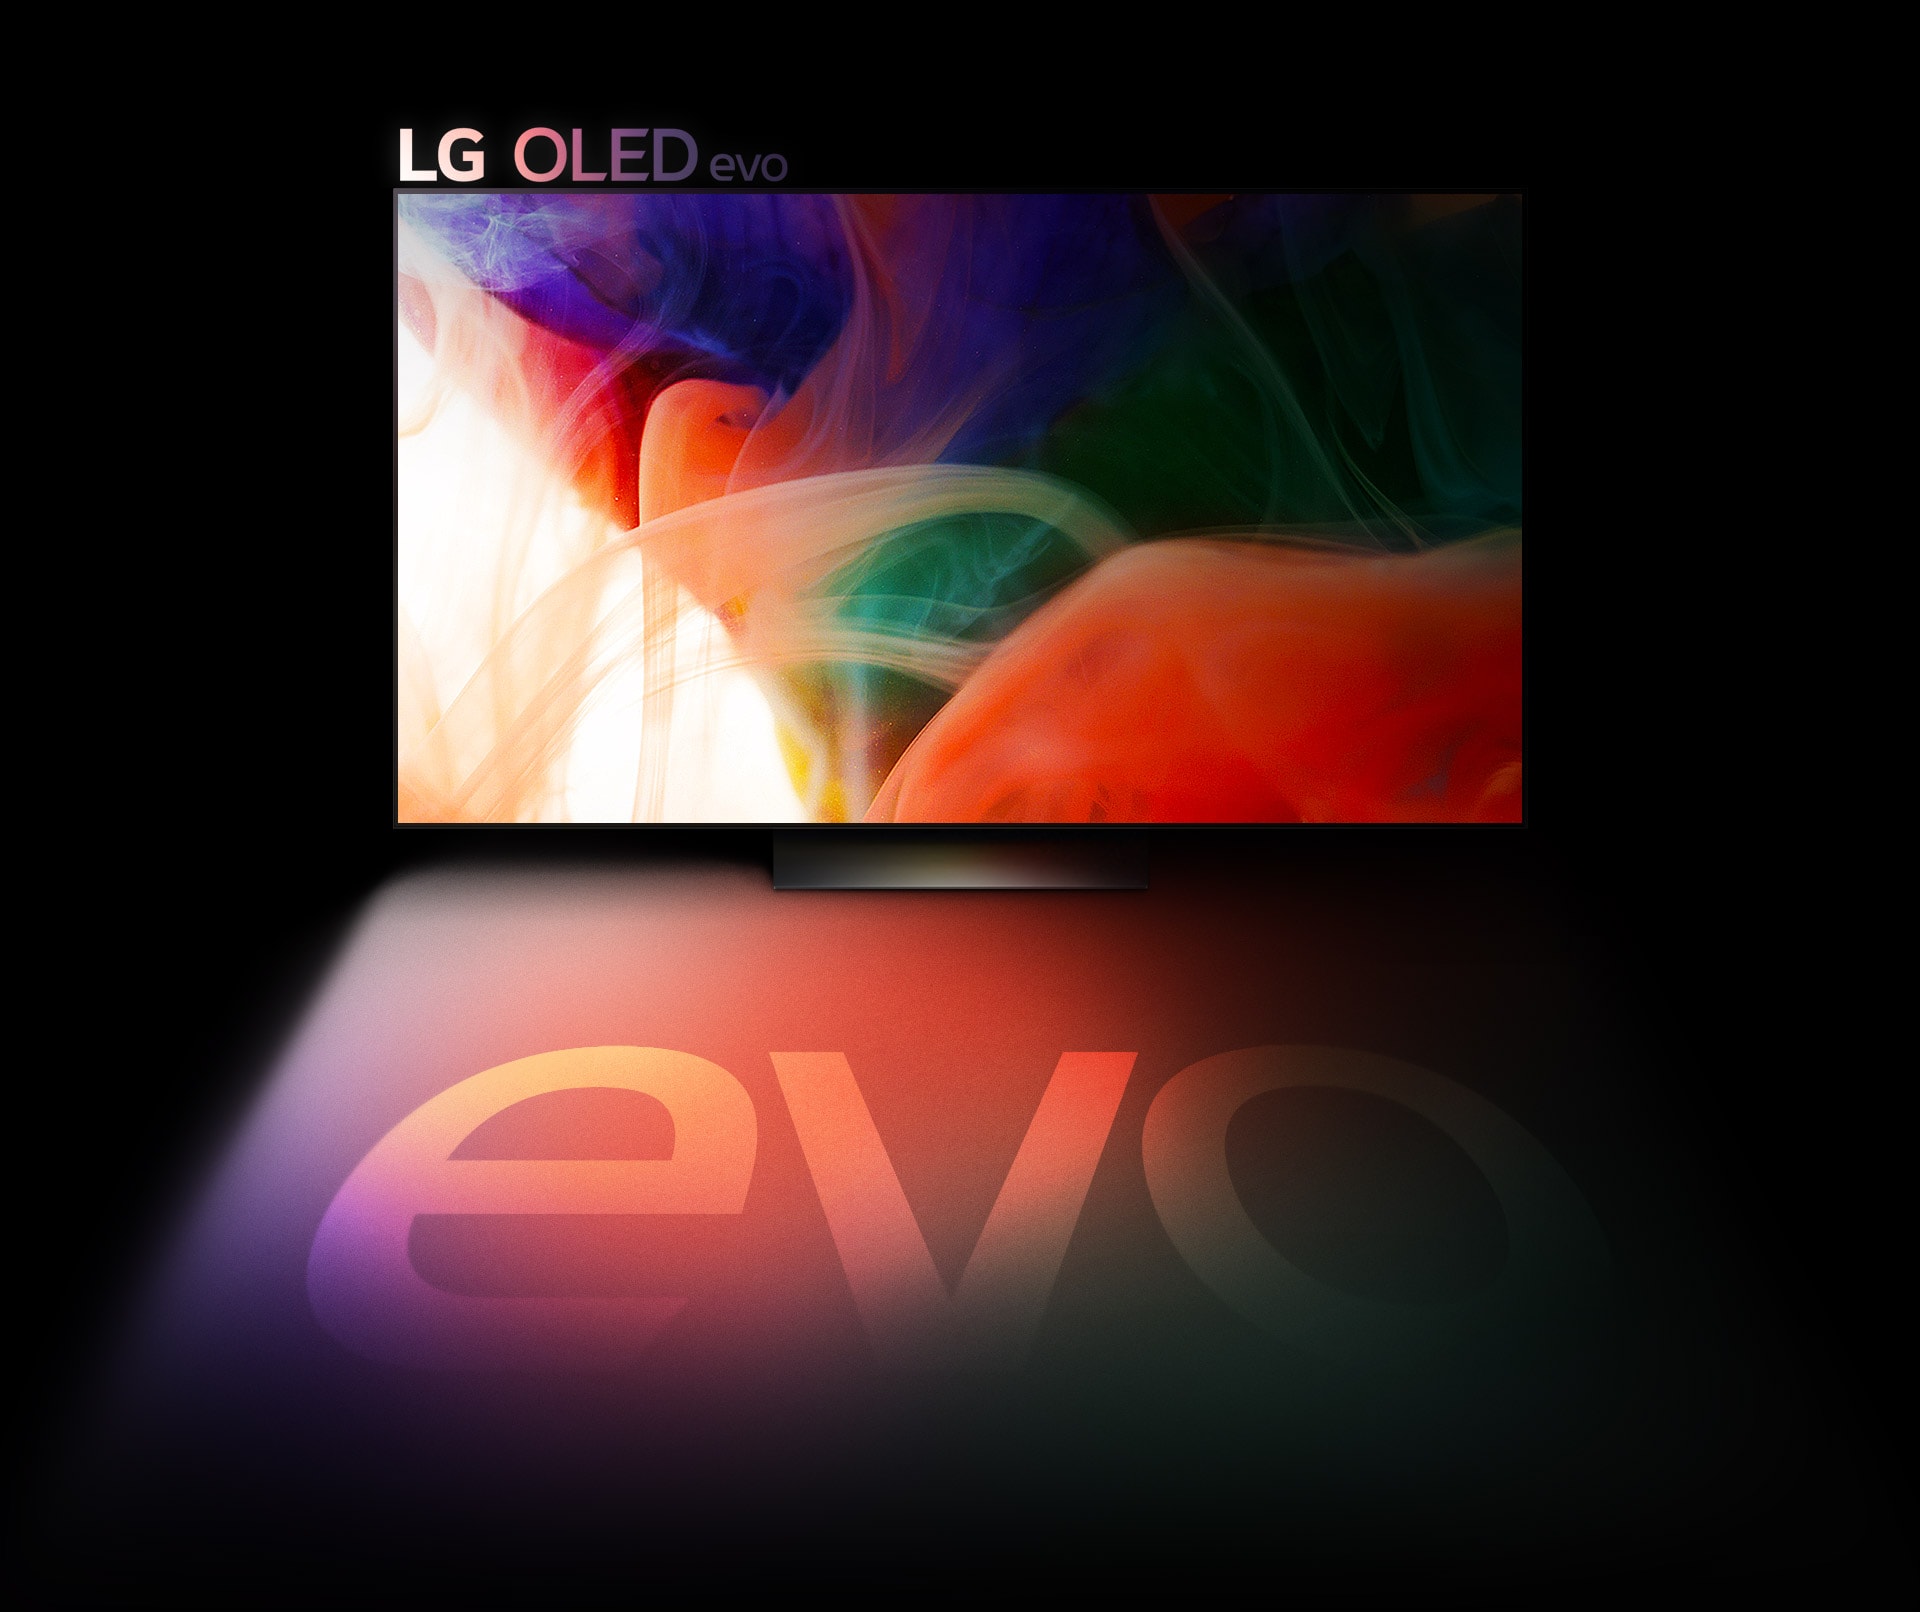 在 LG OLED 電視上顯示一張彩色的抽象圖片